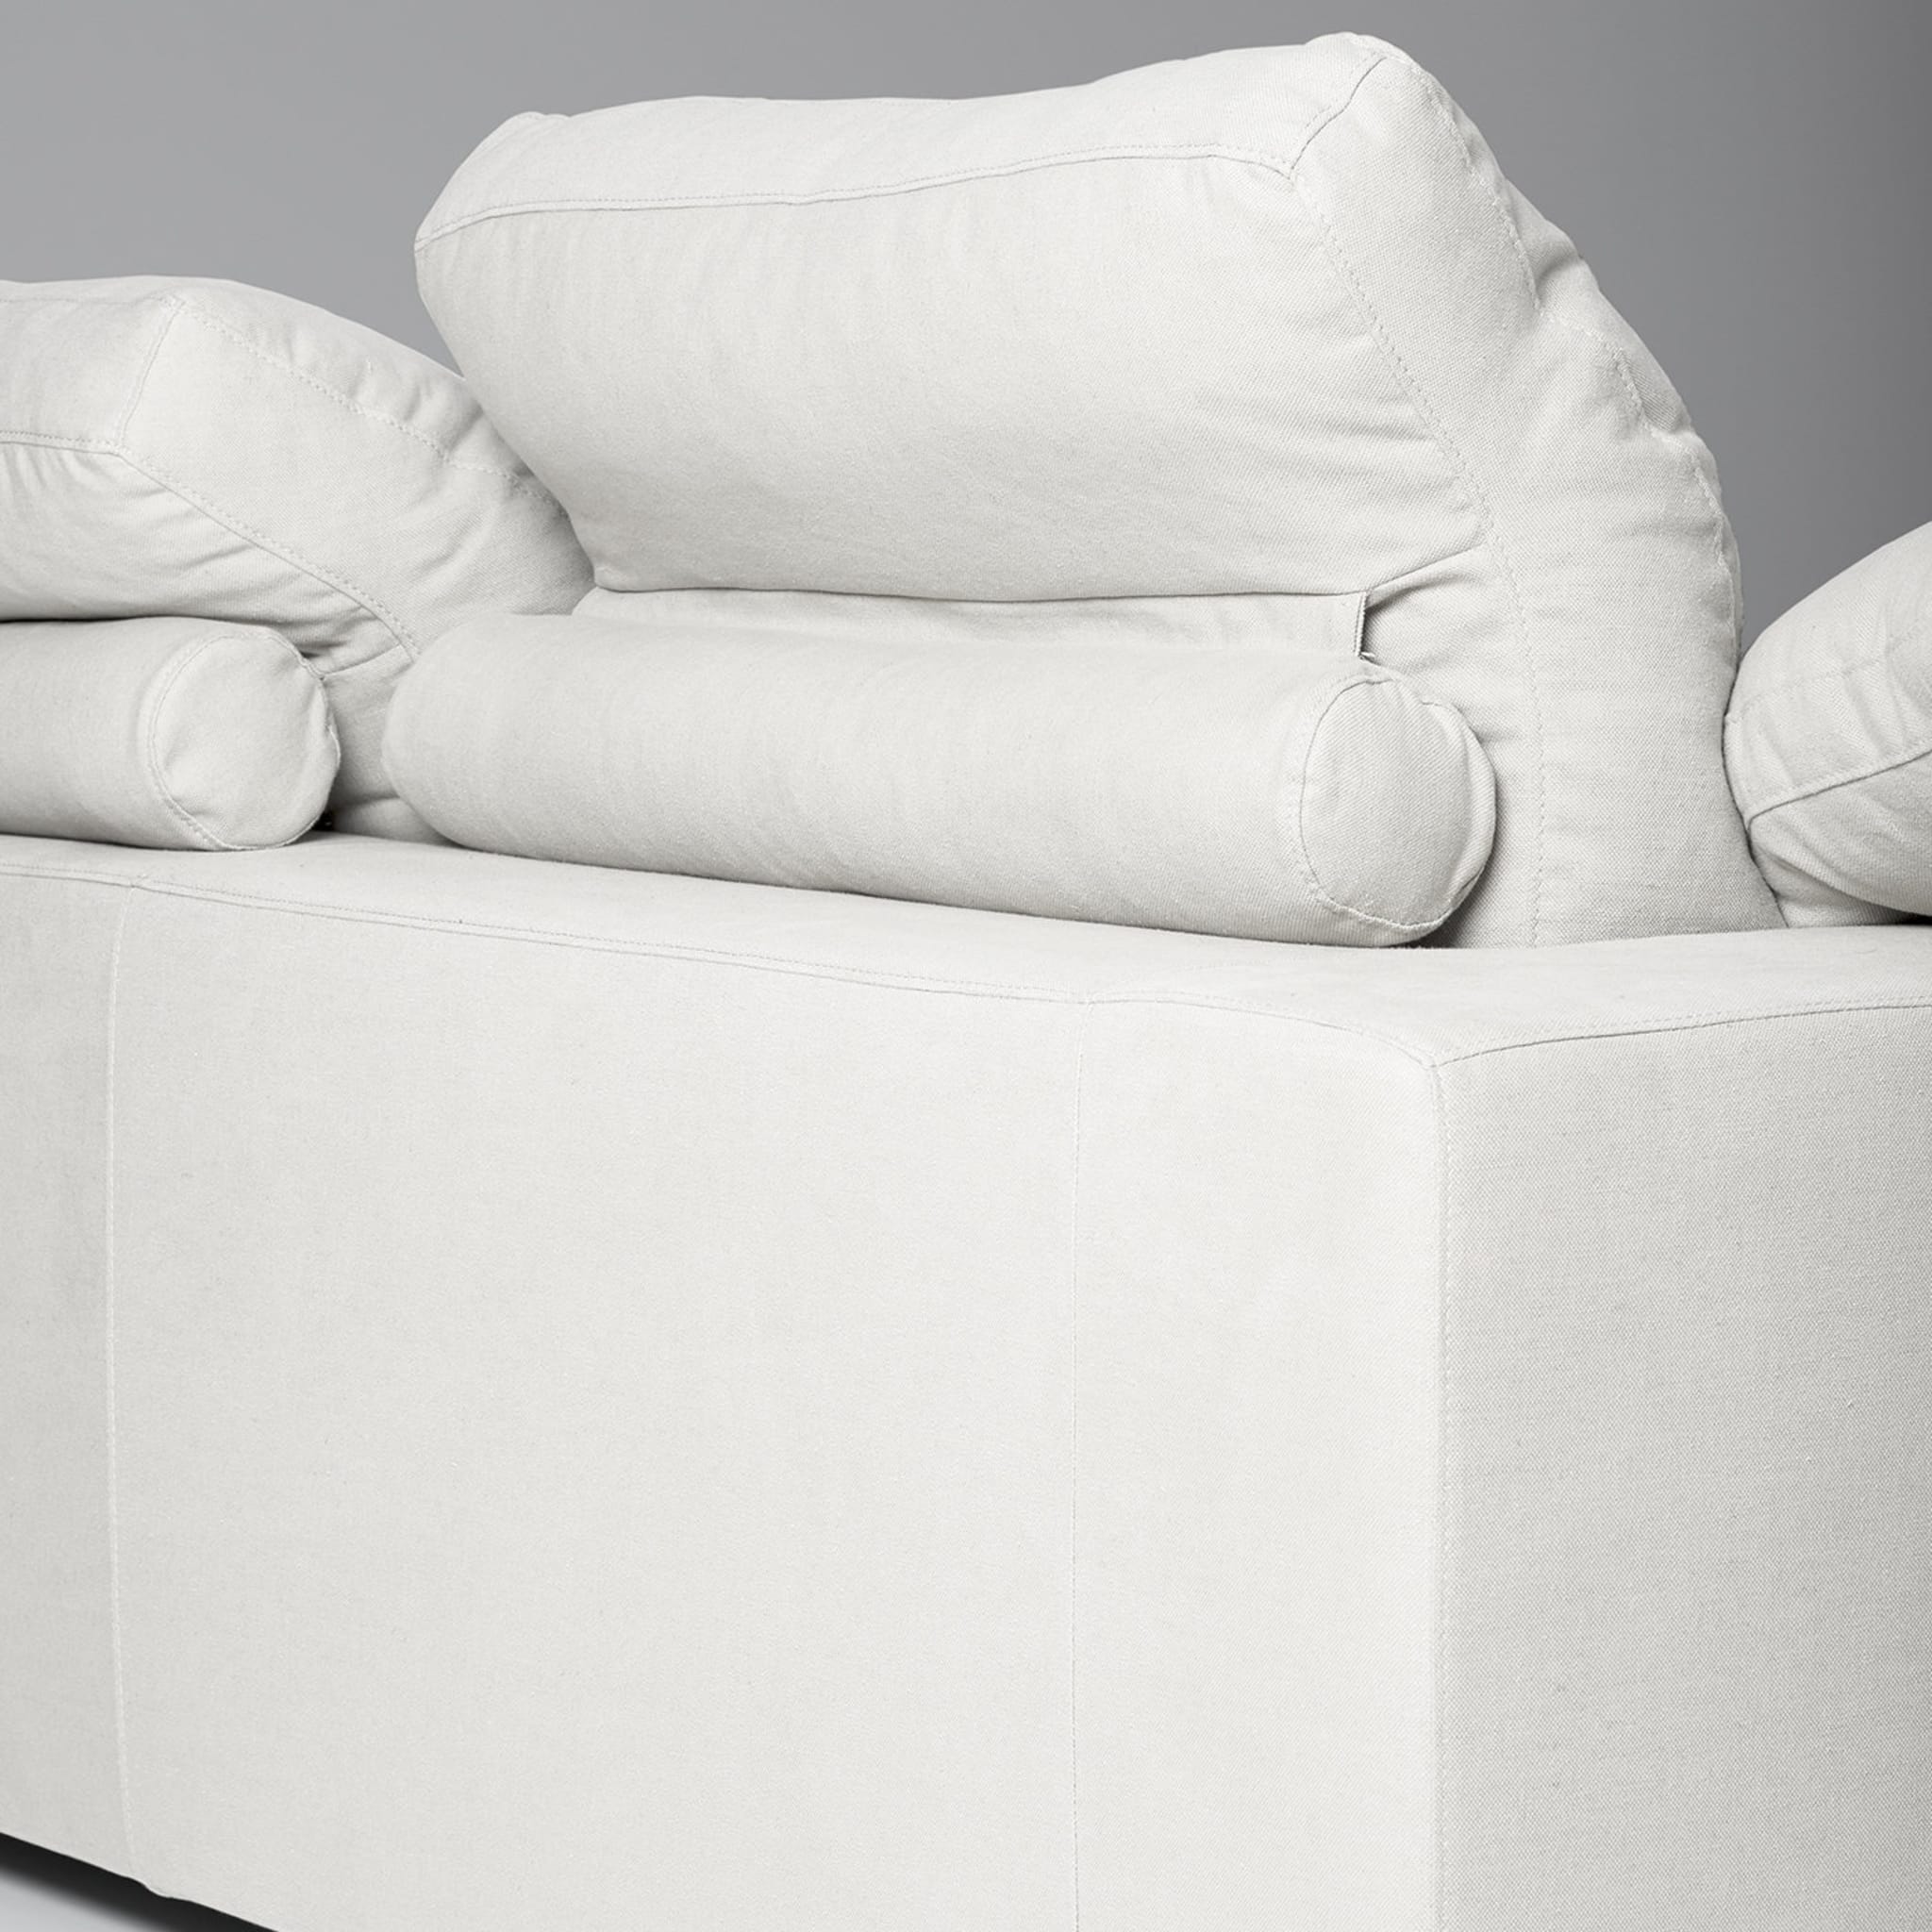 Italo 3-Sitzer Sofa Tribeca Kollektion von Marco und Giulio Mantellassi - Alternative Ansicht 1